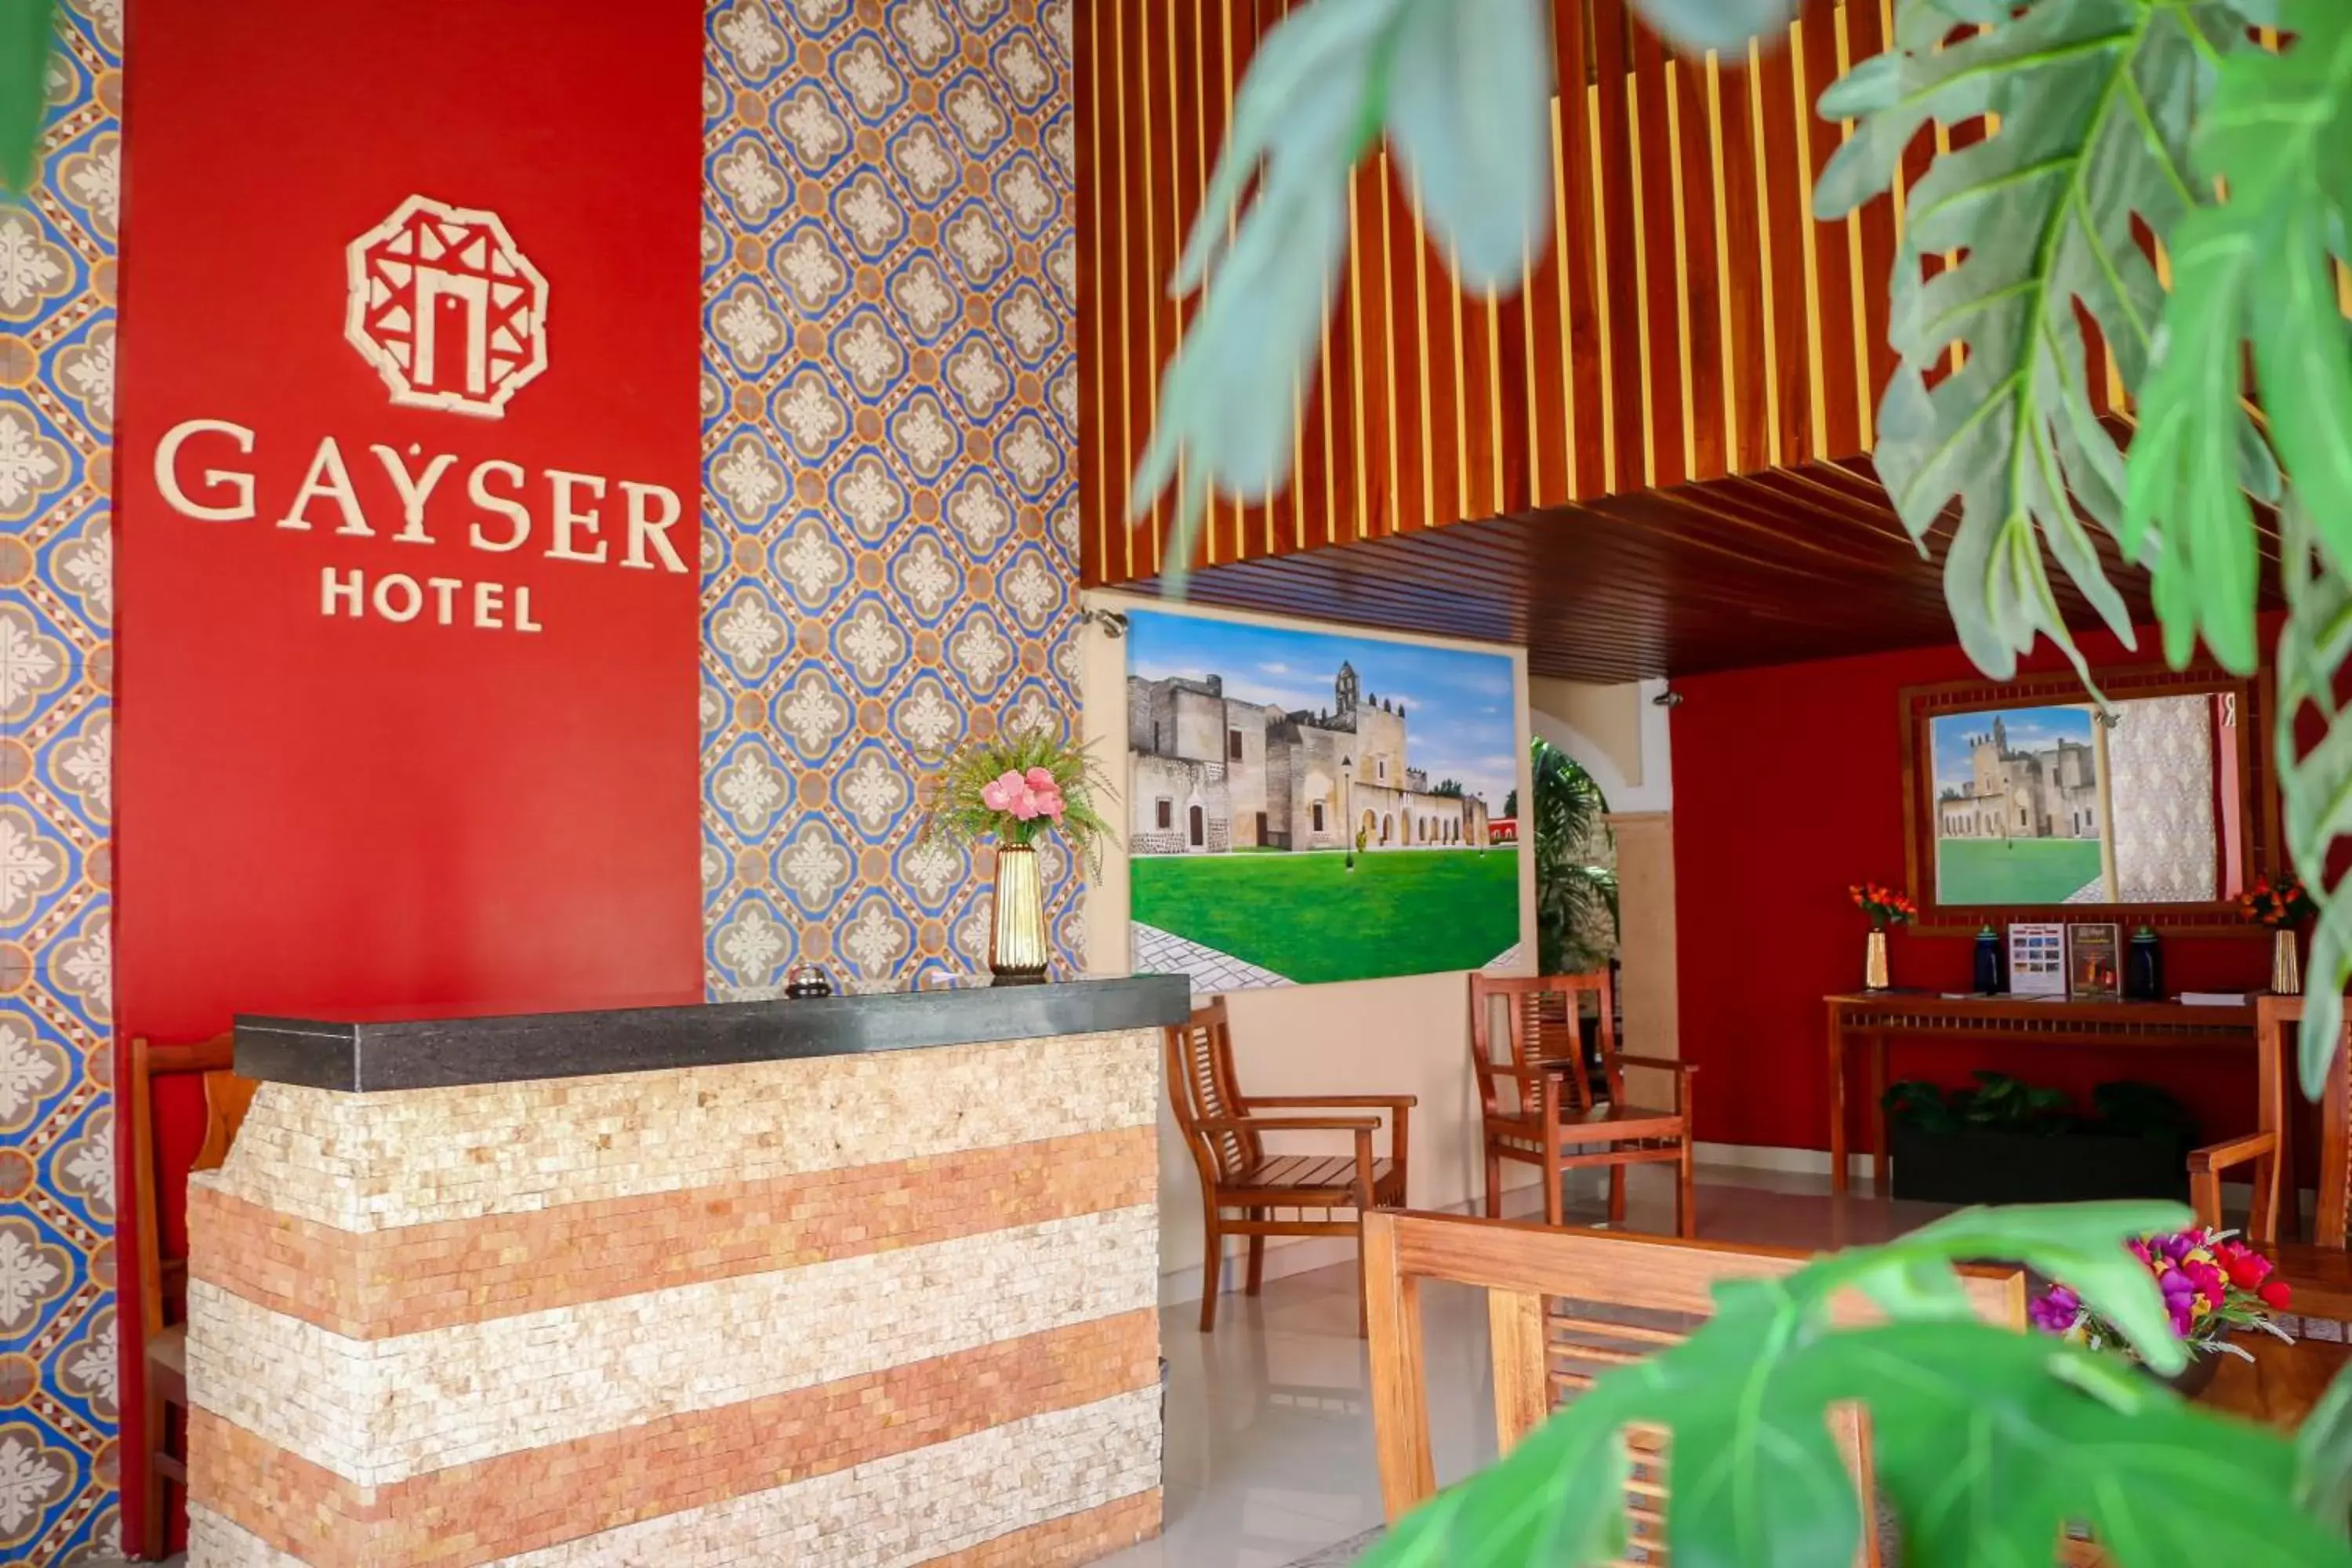 Lobby or reception in Hotel Gayser